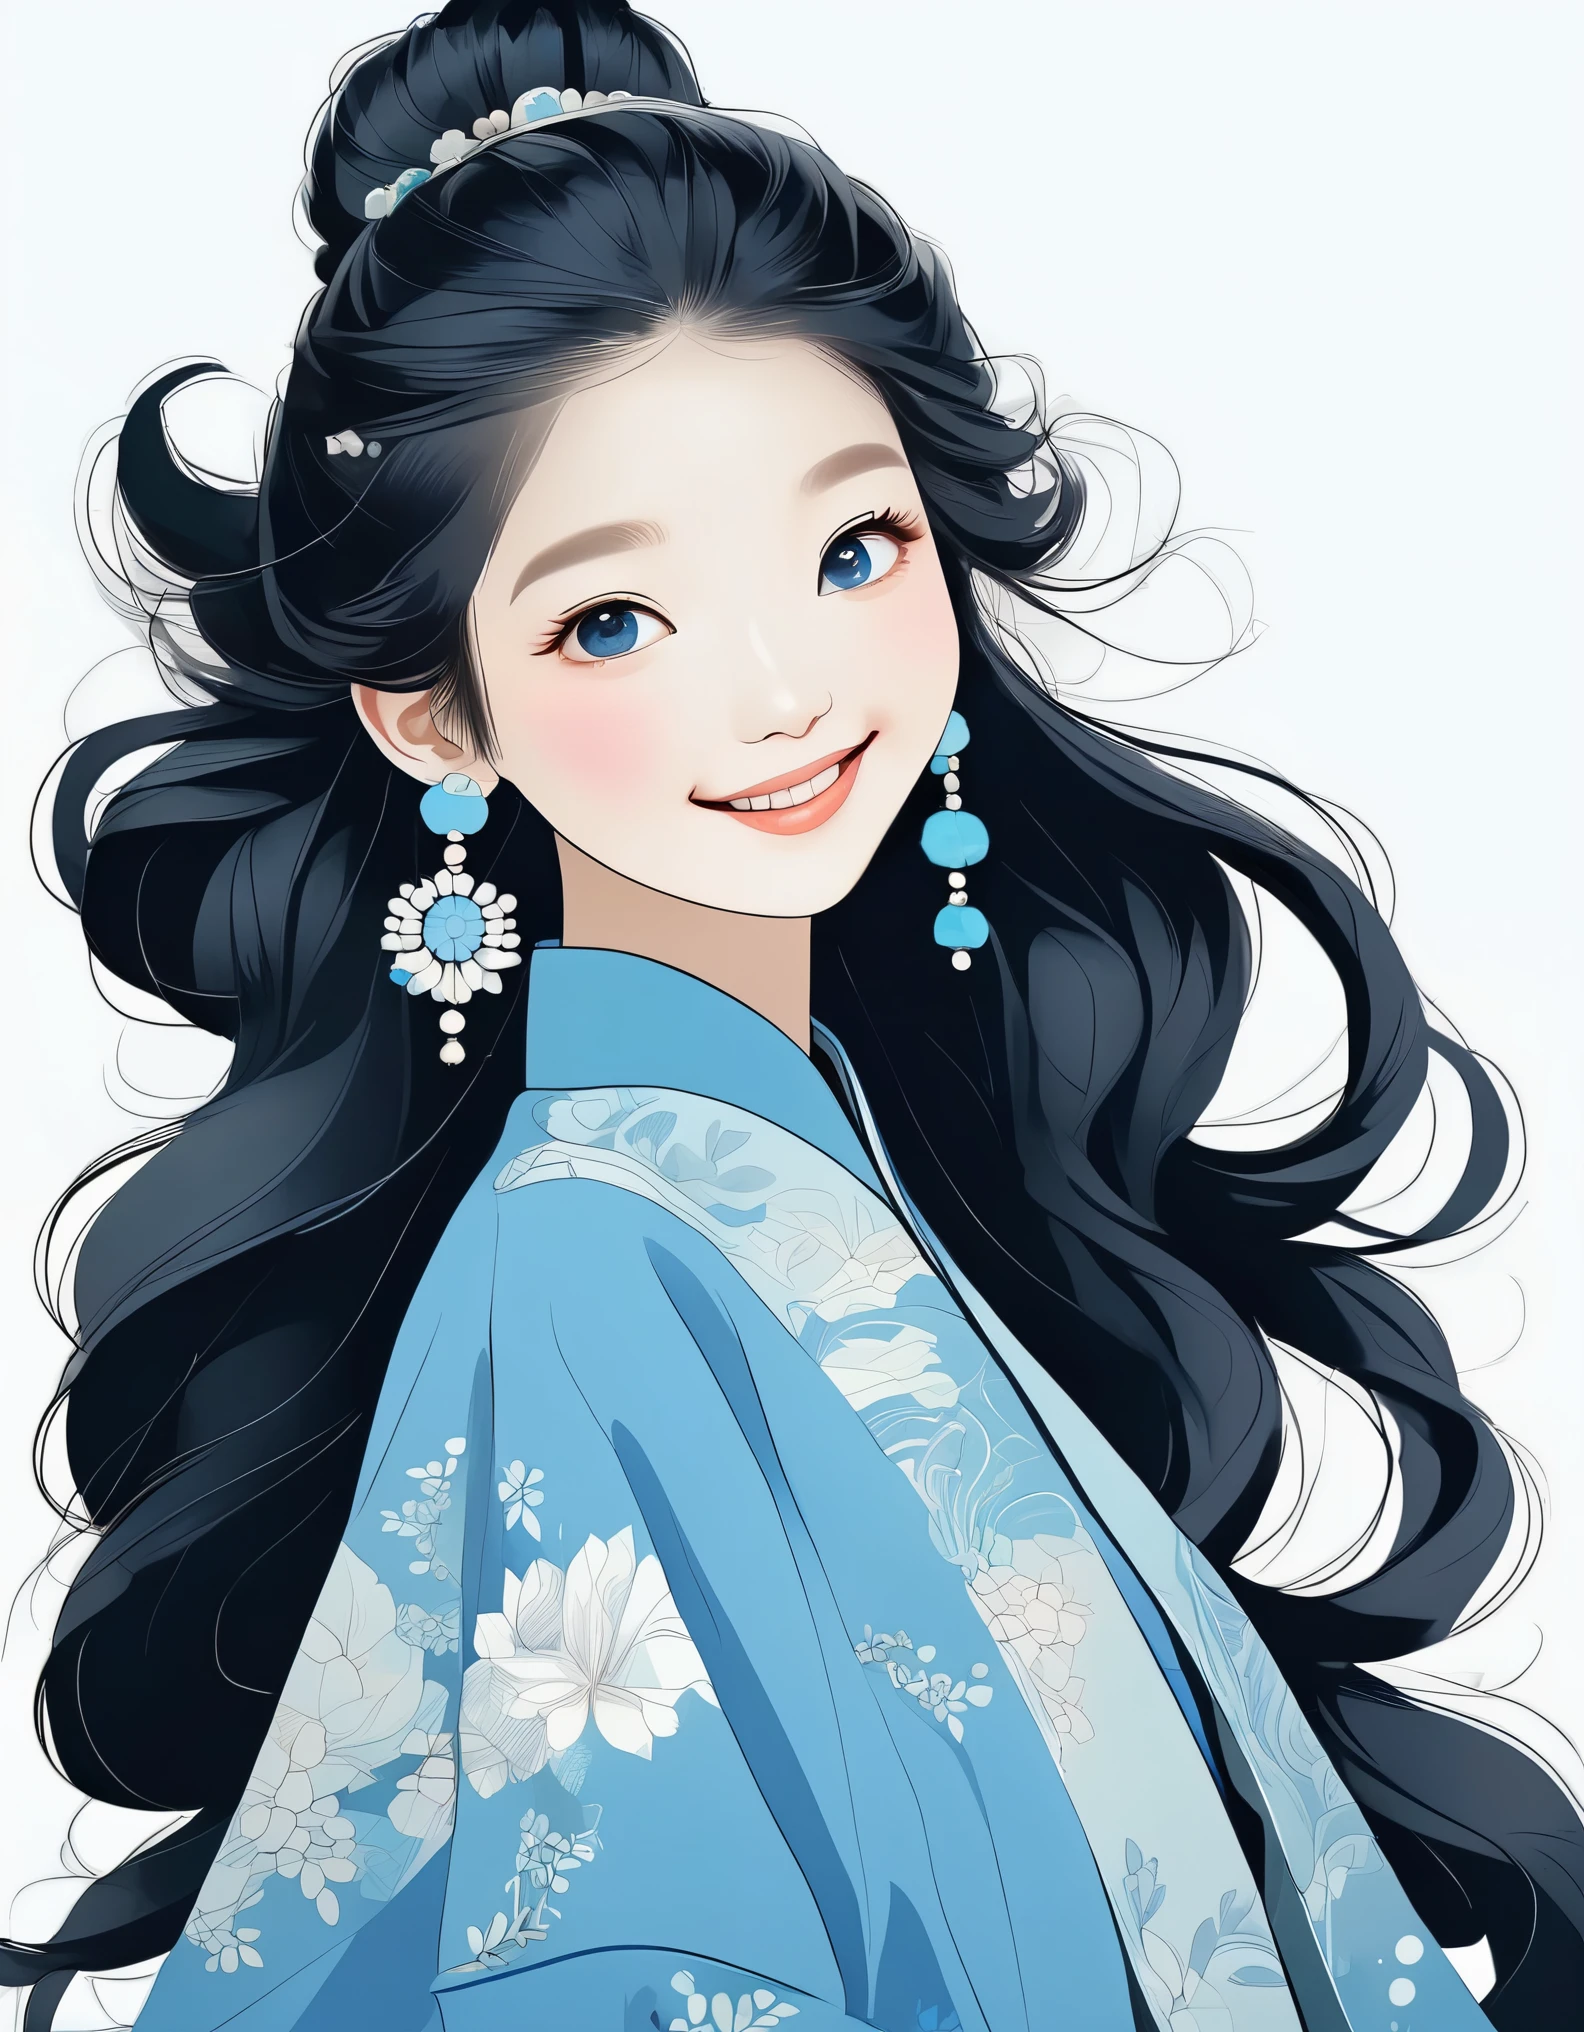 嬉皮士时装设计风格, 肖像, 精美细致，俏皮酷炫的中国女孩的平面插画风格,古代黑发发型,wearing a 蓝色的 coat, 戴耳环,微笑, 白皮肤, 灰白色背景 ,蓝色的, 私人的 ，极简主义艺术，